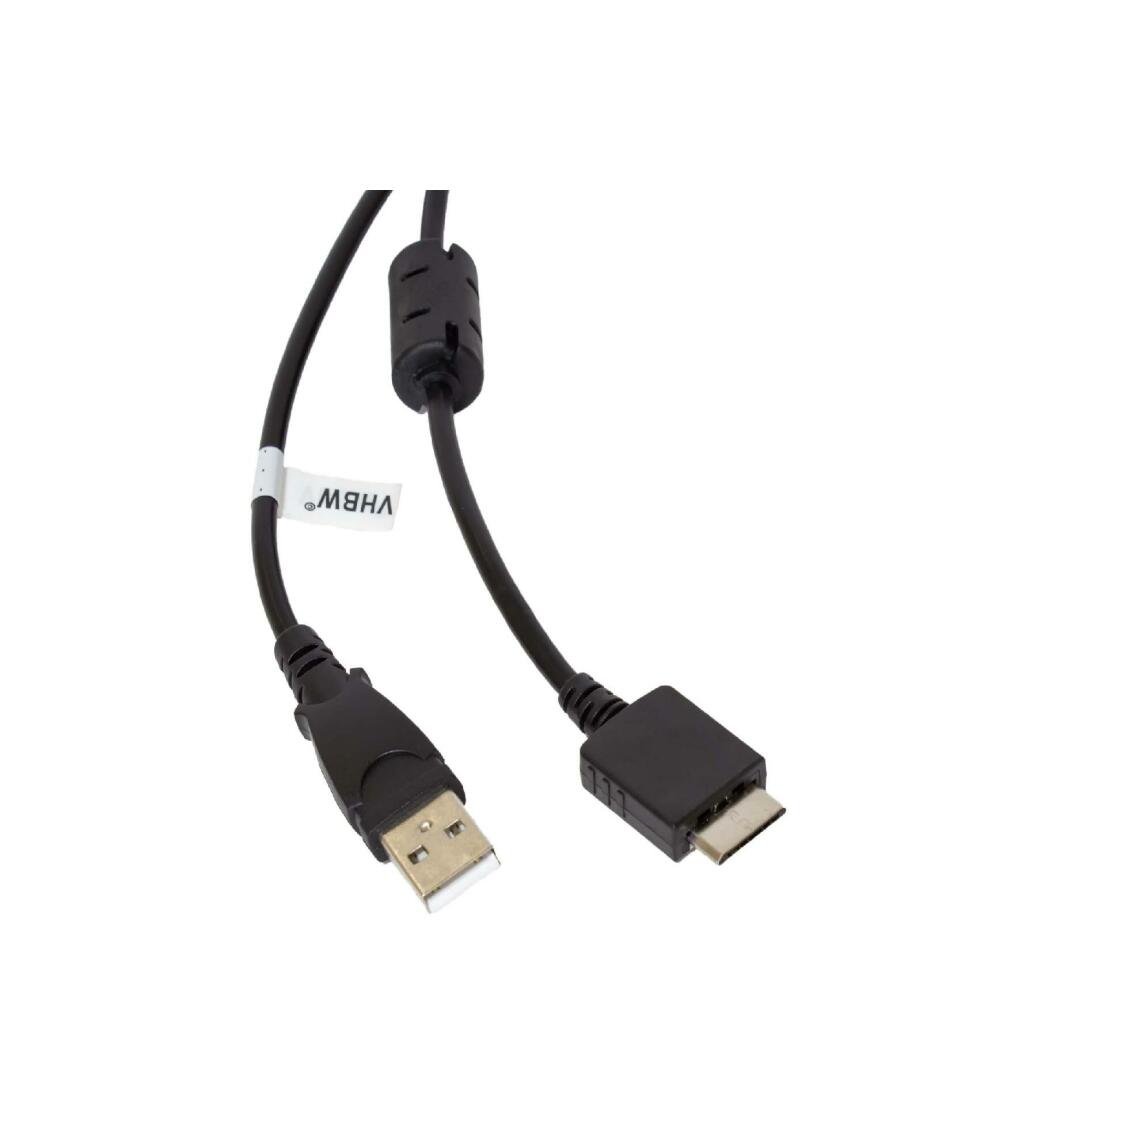 Vhbw - vhbw câble de données USB (type A sur lecteur MP3) câble de chargement compatible avec Sony Walkman NWZ-F806, NWZ-S515 lecteur MP3 - noir, 150cm - Alimentation modulaire